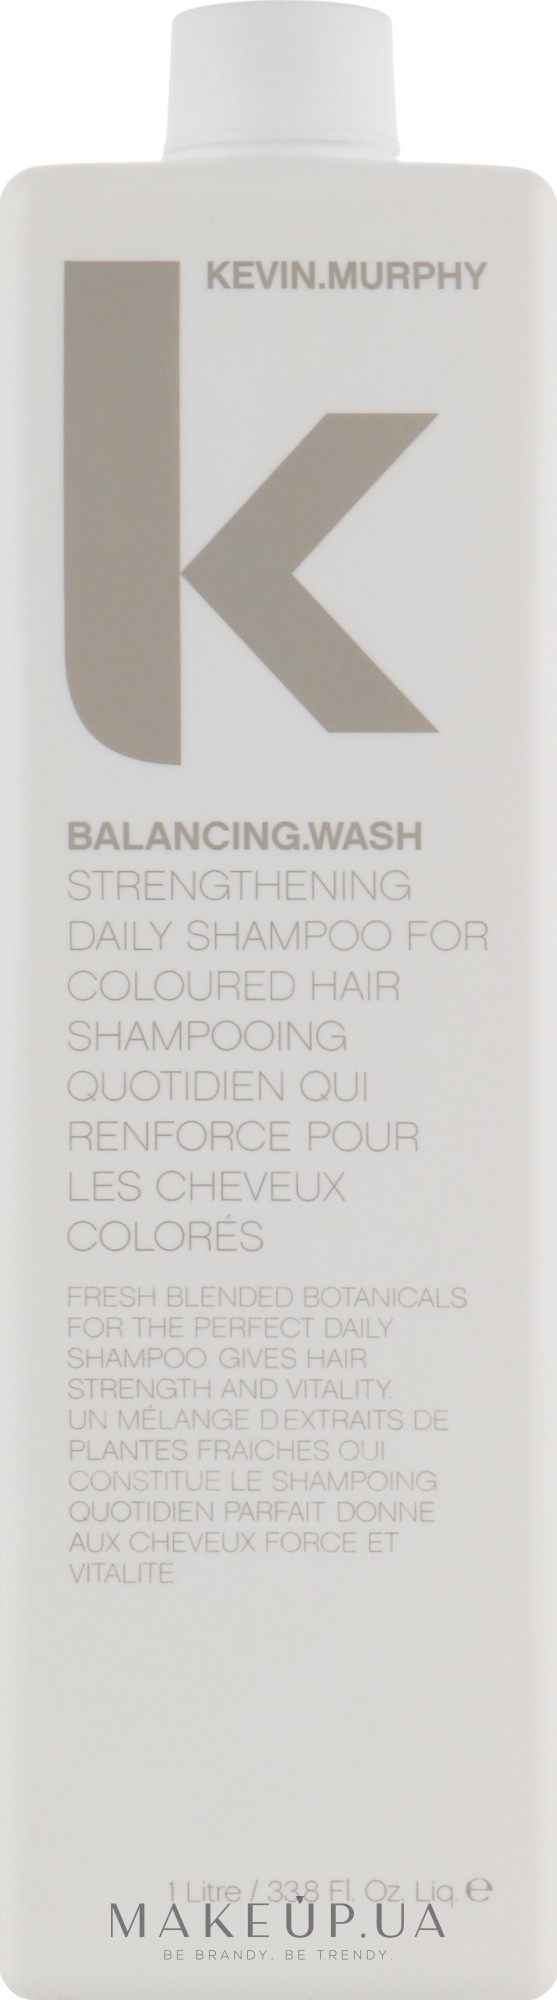 Укрепляющий ежедневный шампунь для окрашенных волос - Kevin.Murphy Balancing.Wash — фото 1000ml